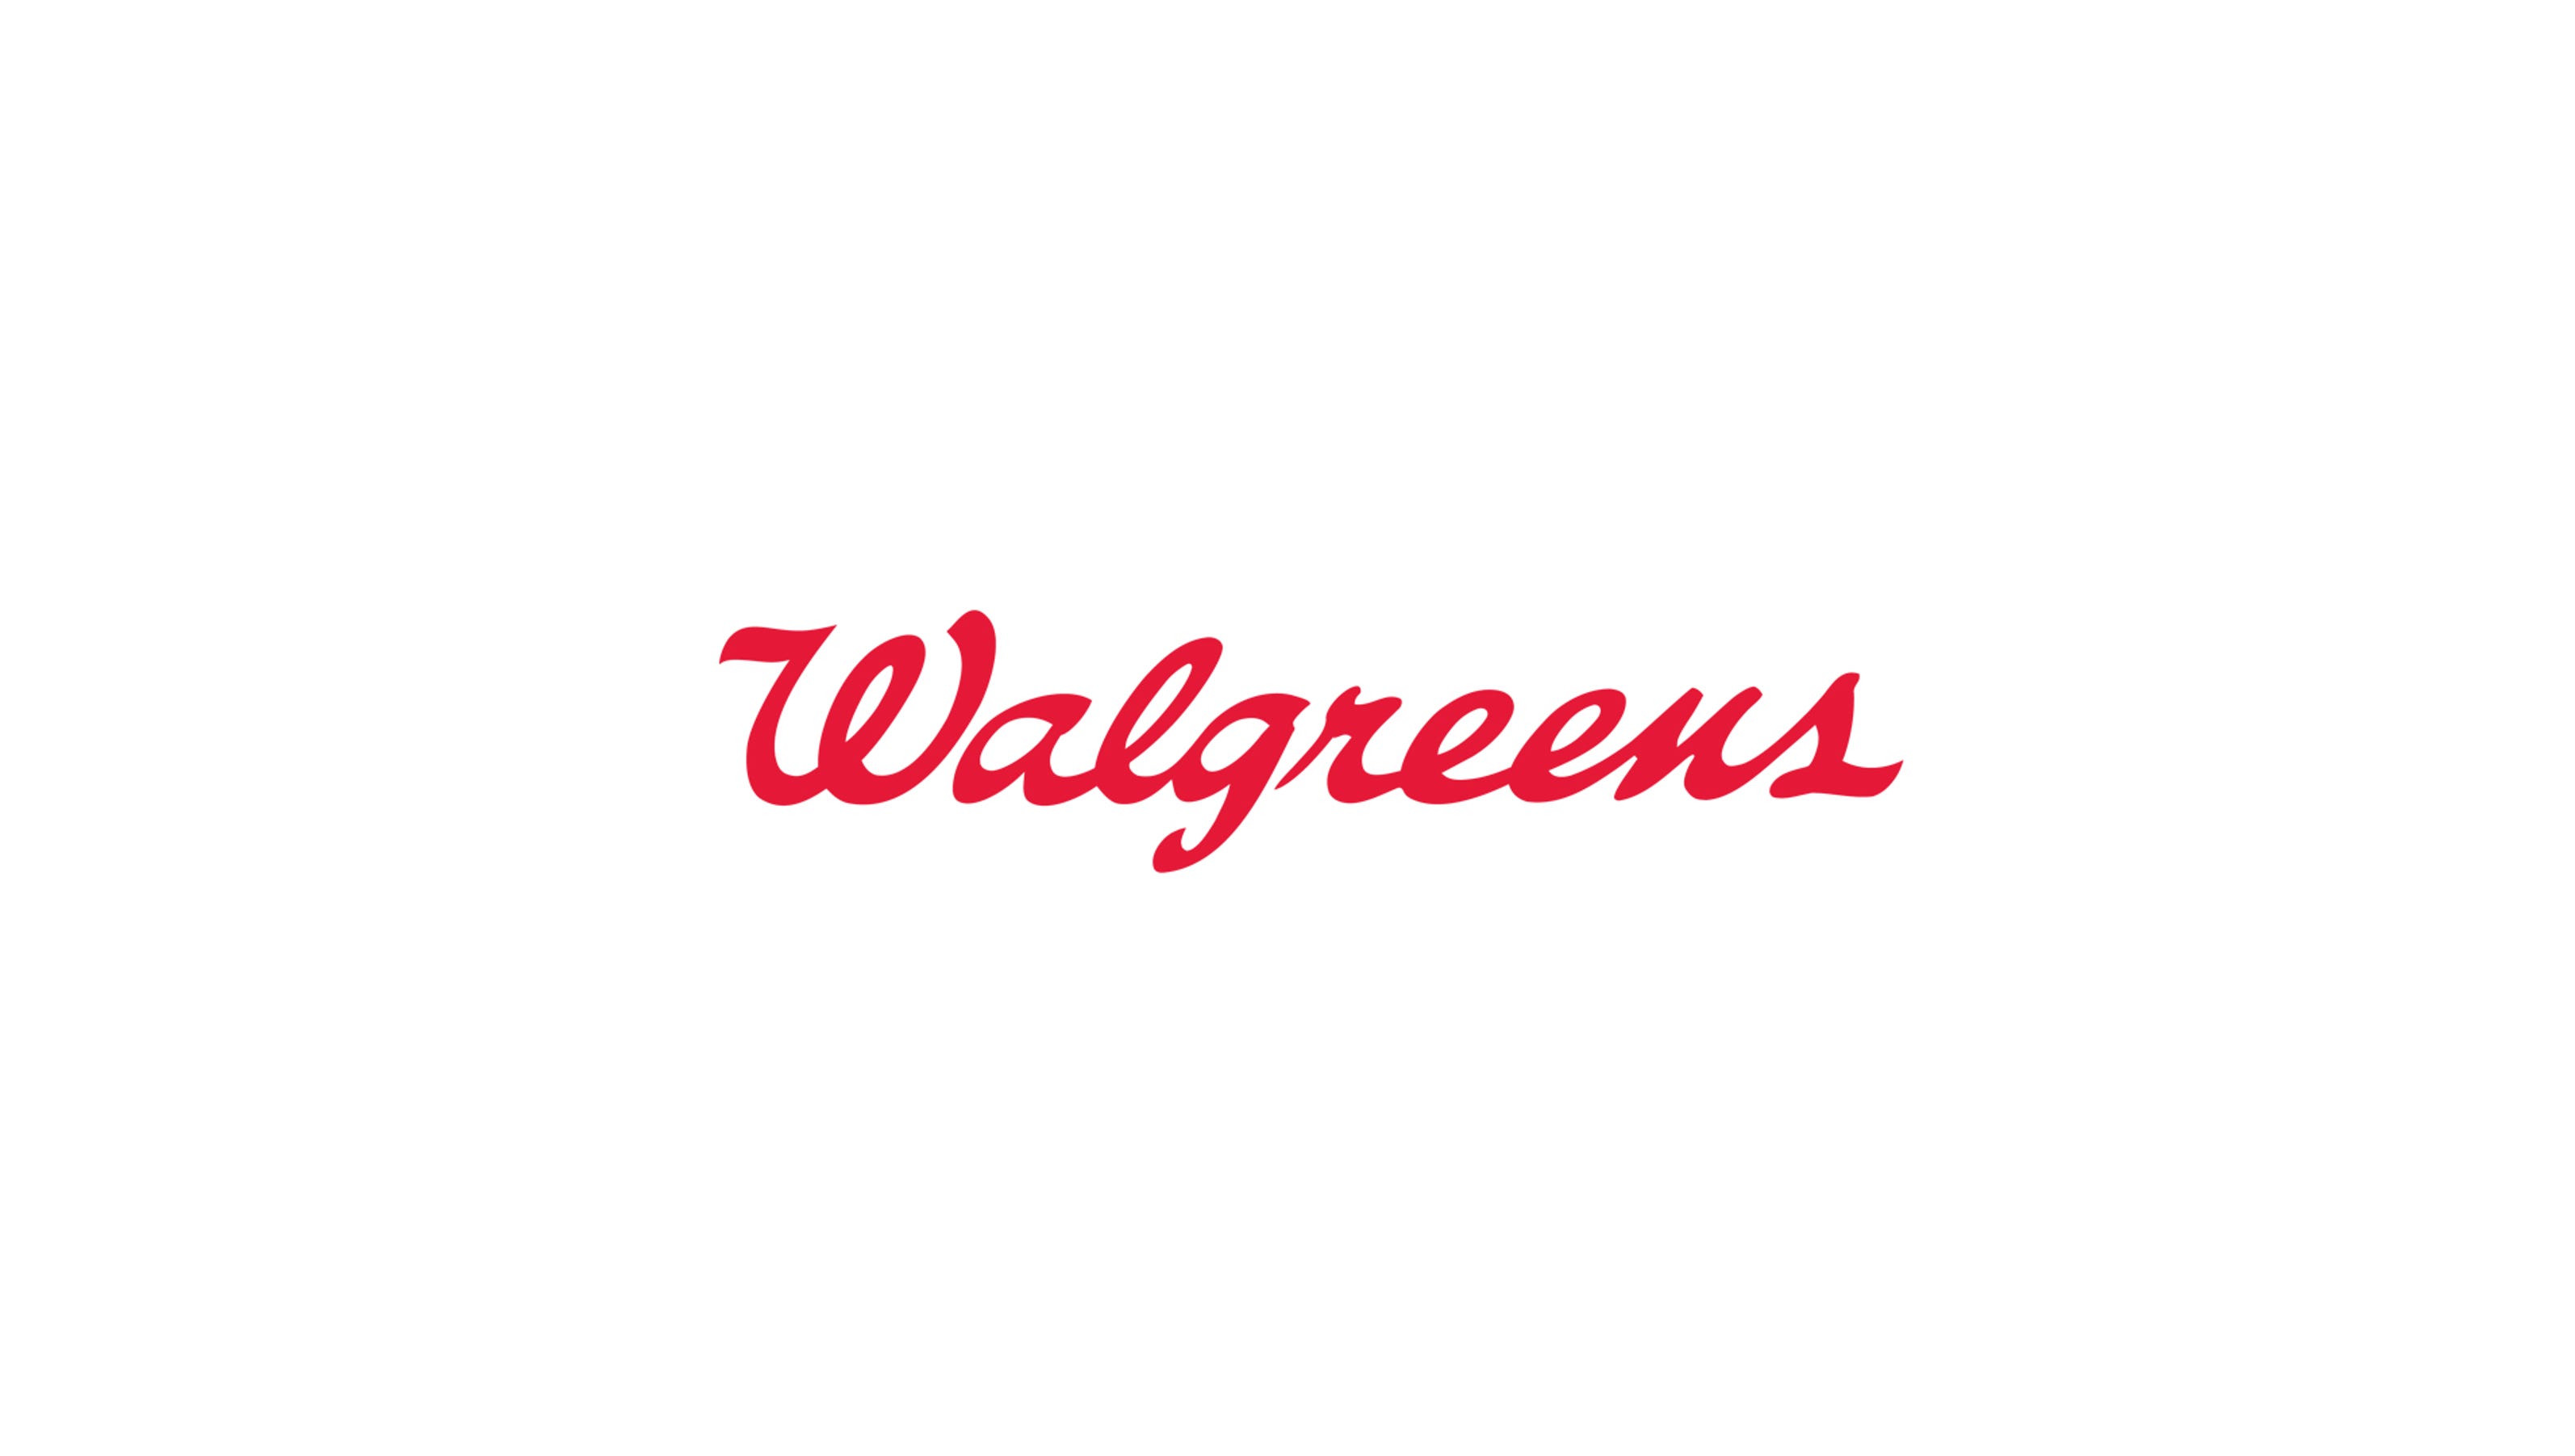 walgreens logo clip art download - photo #3